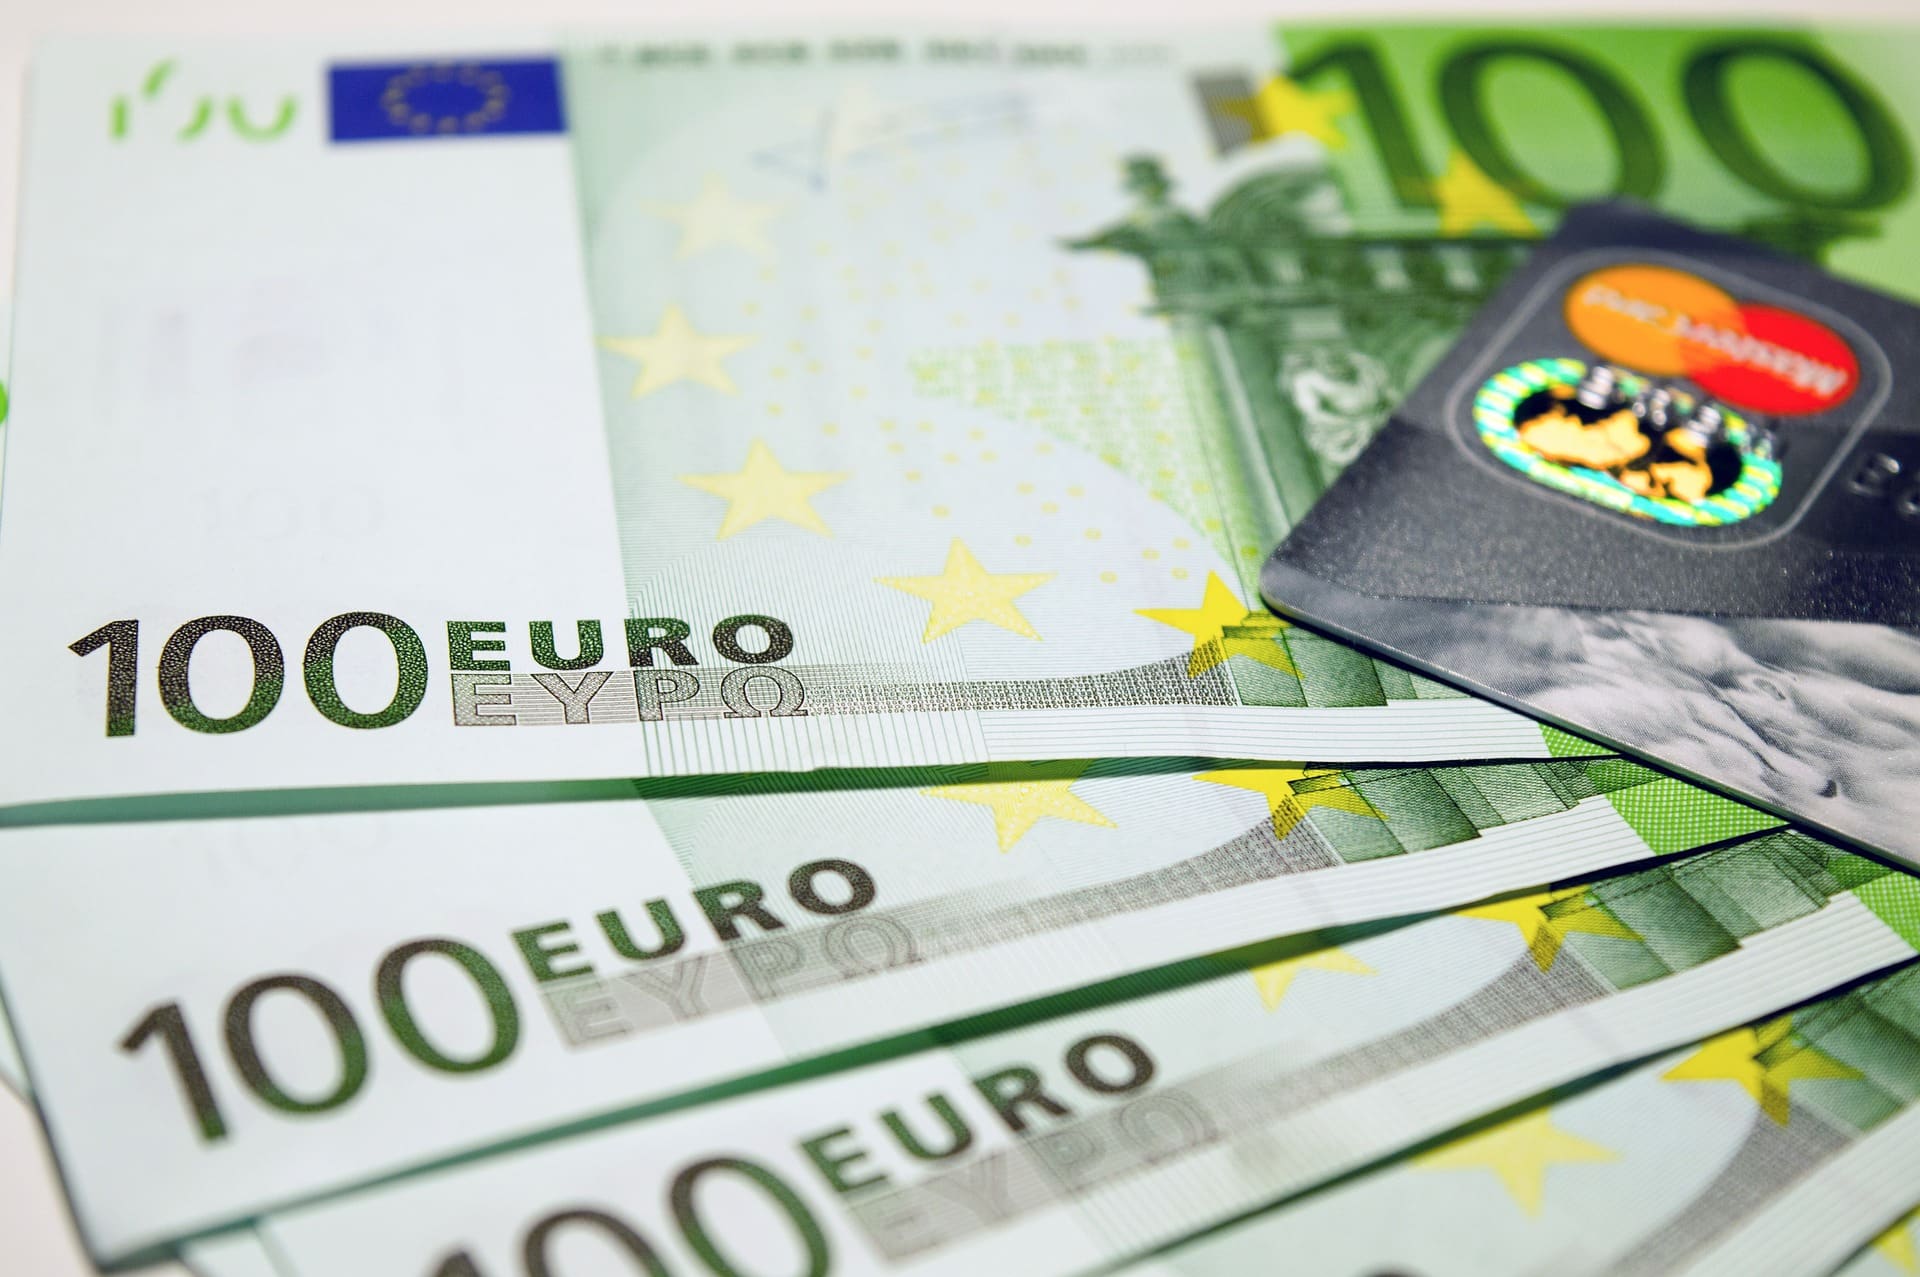 Euroscheine, Kreditkarte, Bargeld